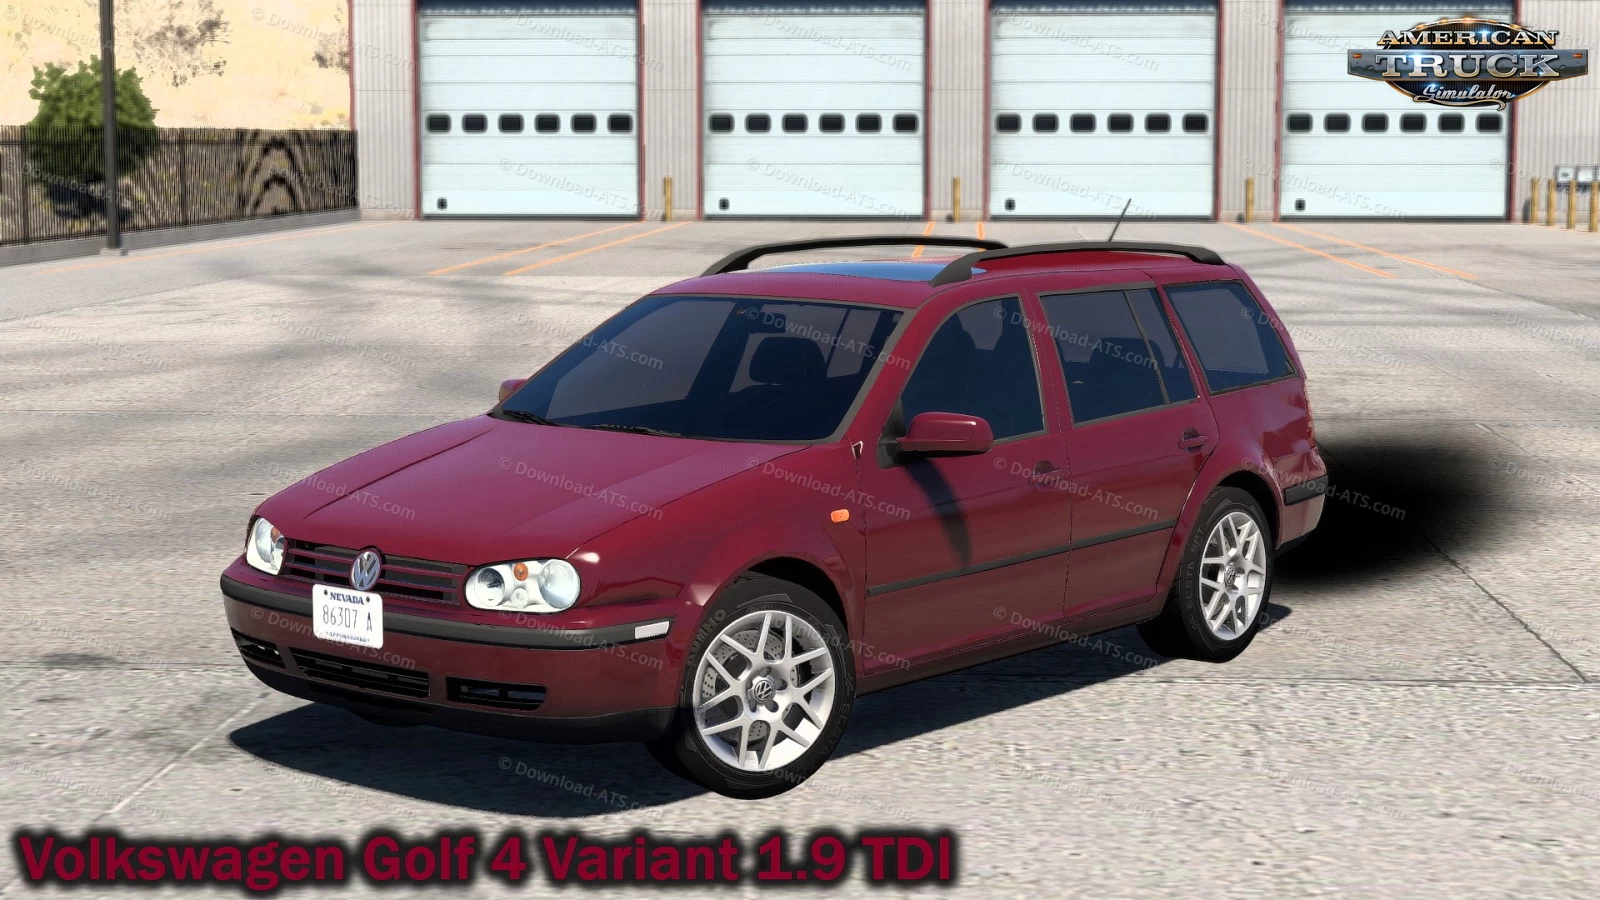 Volkswagen Golf 4 Variant 1.9 TDI v2.1 (1.49.x) for ATS